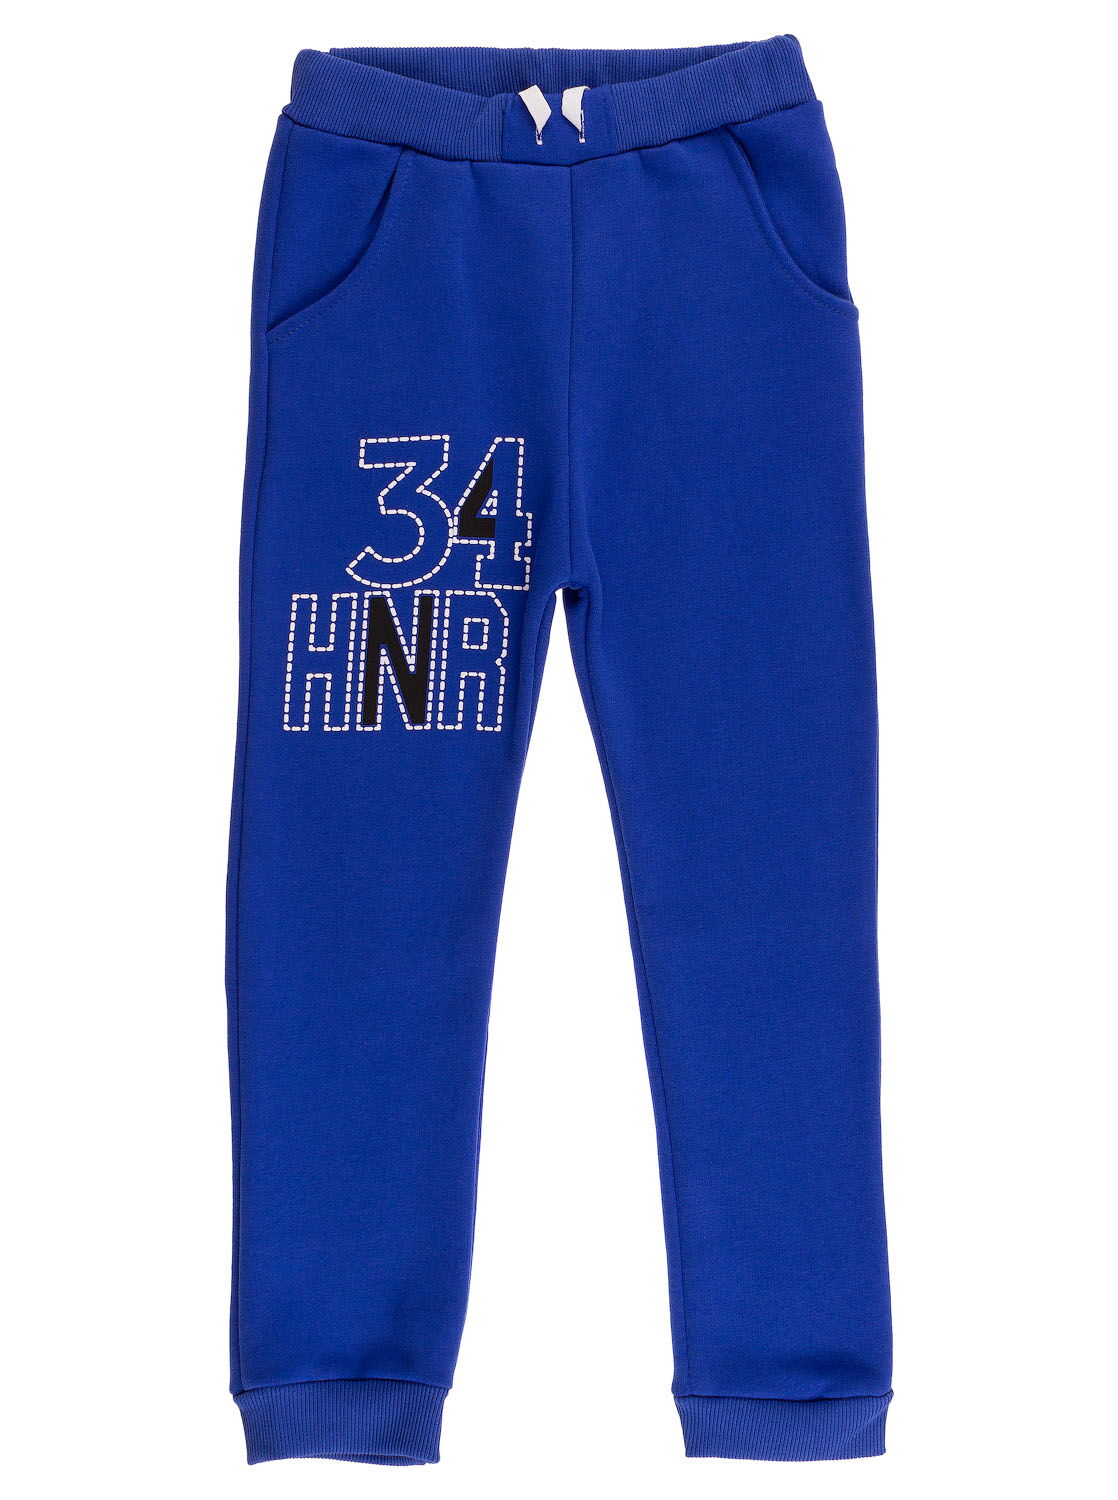 Утепленные спортивные штаны для мальчика 34 синие - цена